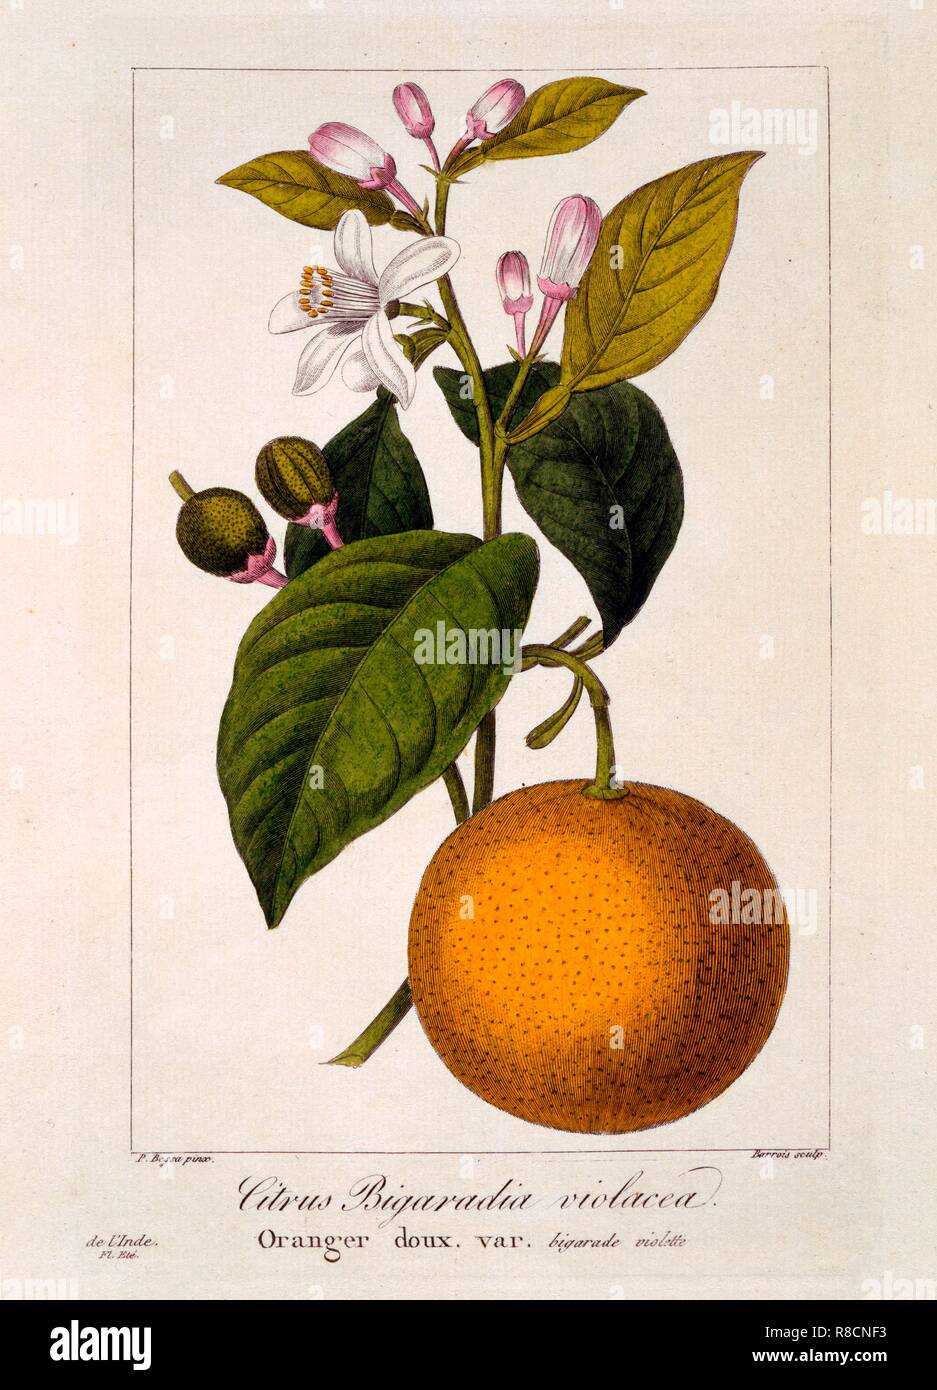 Sweet Orange: Citrus sinensis var: Bigaradia violacea, pub. 1836. Creator: Panacre Bessa (1772-1846). Stock Photo